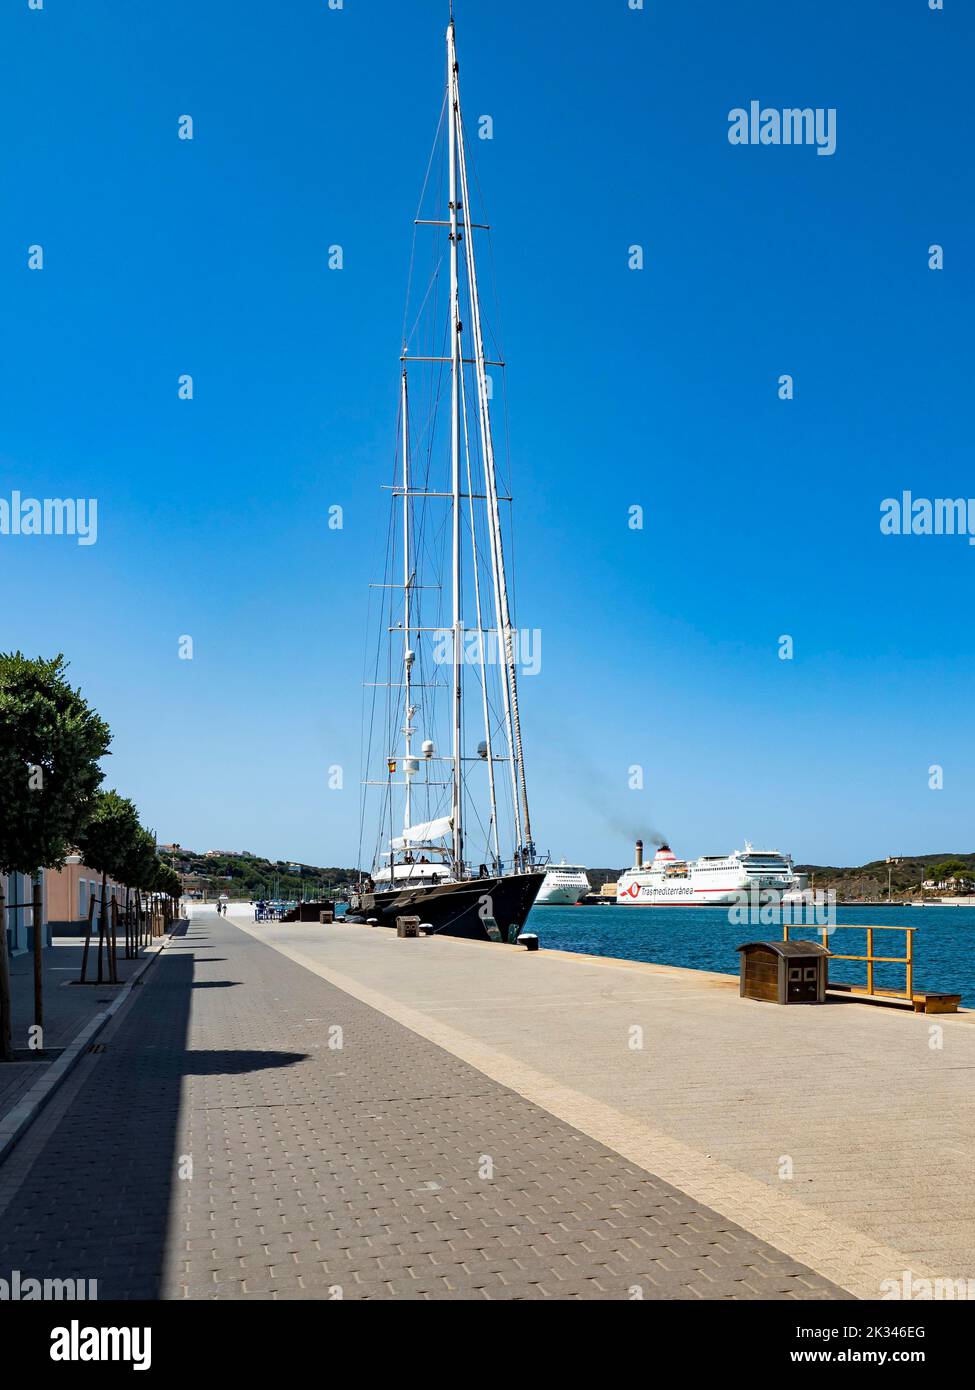 Port de Mao, Yacht à voile, Mahon, Minorque, Iles Baléares, Espagne Banque D'Images